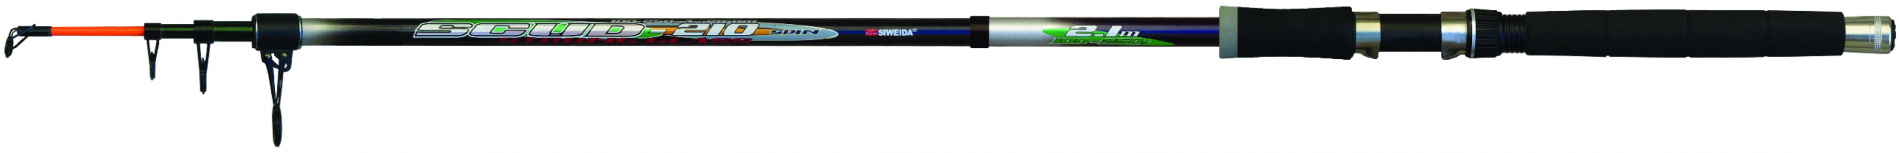 Спиннинг тел. SWD "Scud" 3,6м (100-250г) (скл. кольцо,чехол)